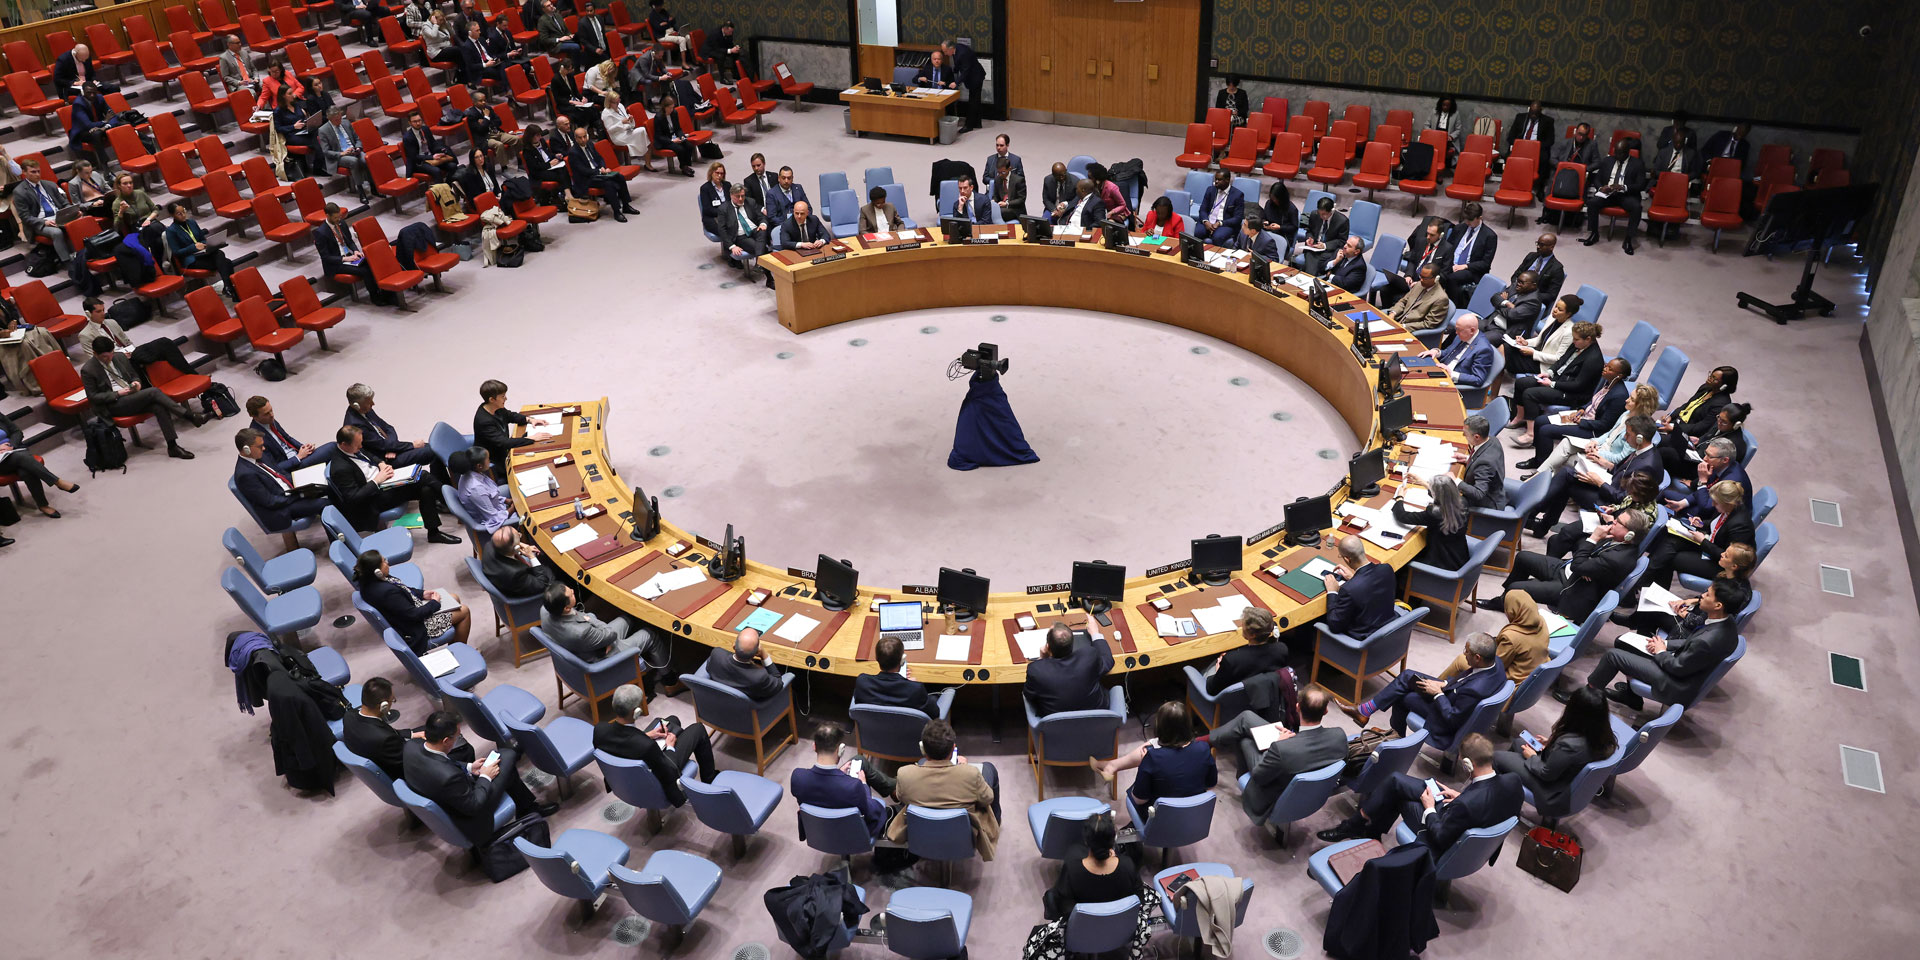 Vertreterinnen und Vertreter der Mitgliedstaaten im UNO-Sicherheitsrat sitzen am hufeisenförmigen Tisch an einer Debatte unter der Leitung von Bundesrat Cassis am 3. Mai 2023.